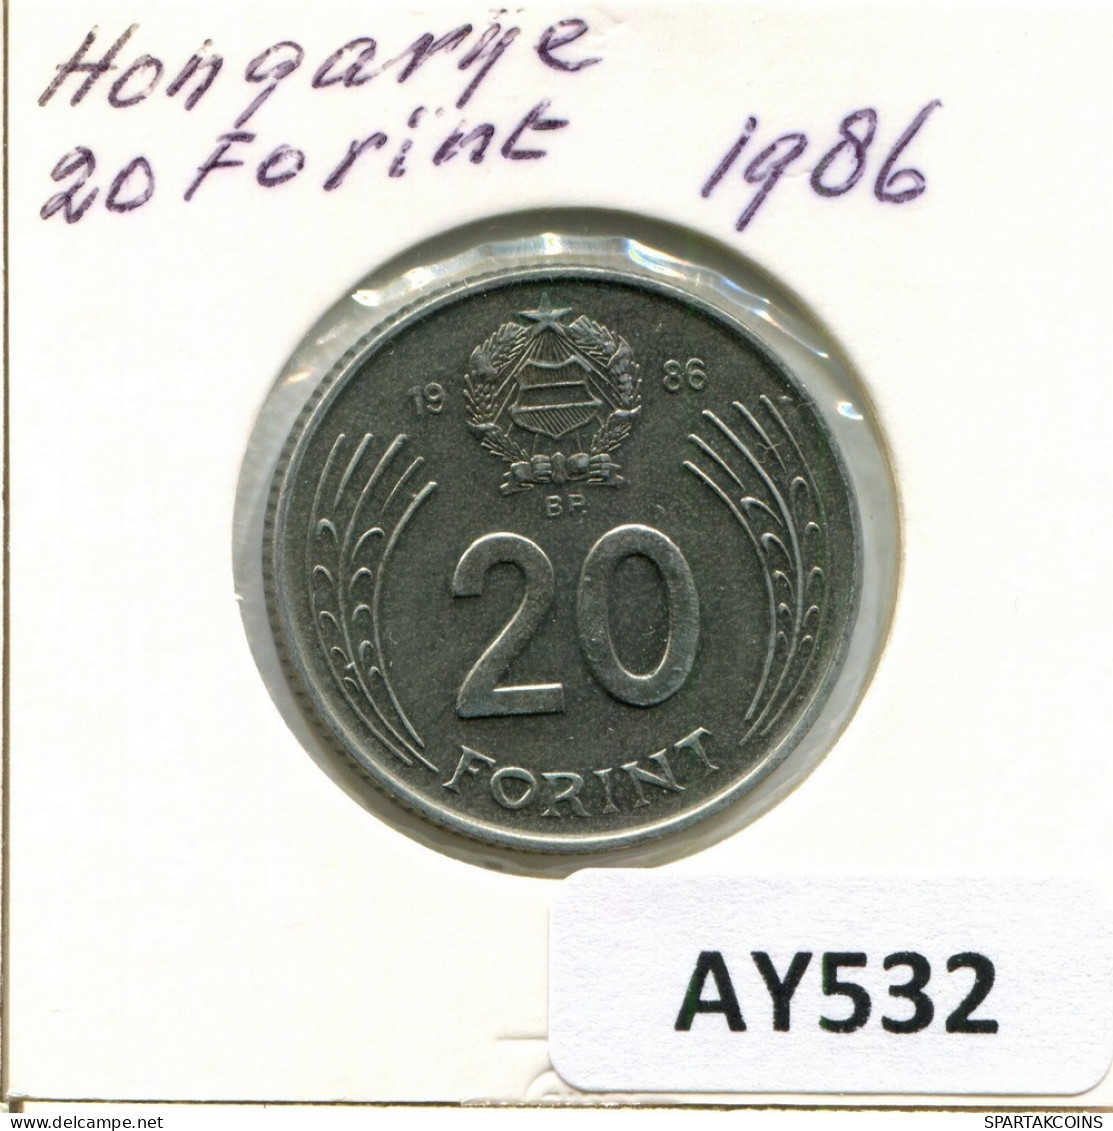 20 FORINT 1986 HUNGRÍA HUNGARY Moneda #AY532.E.A - Hongrie